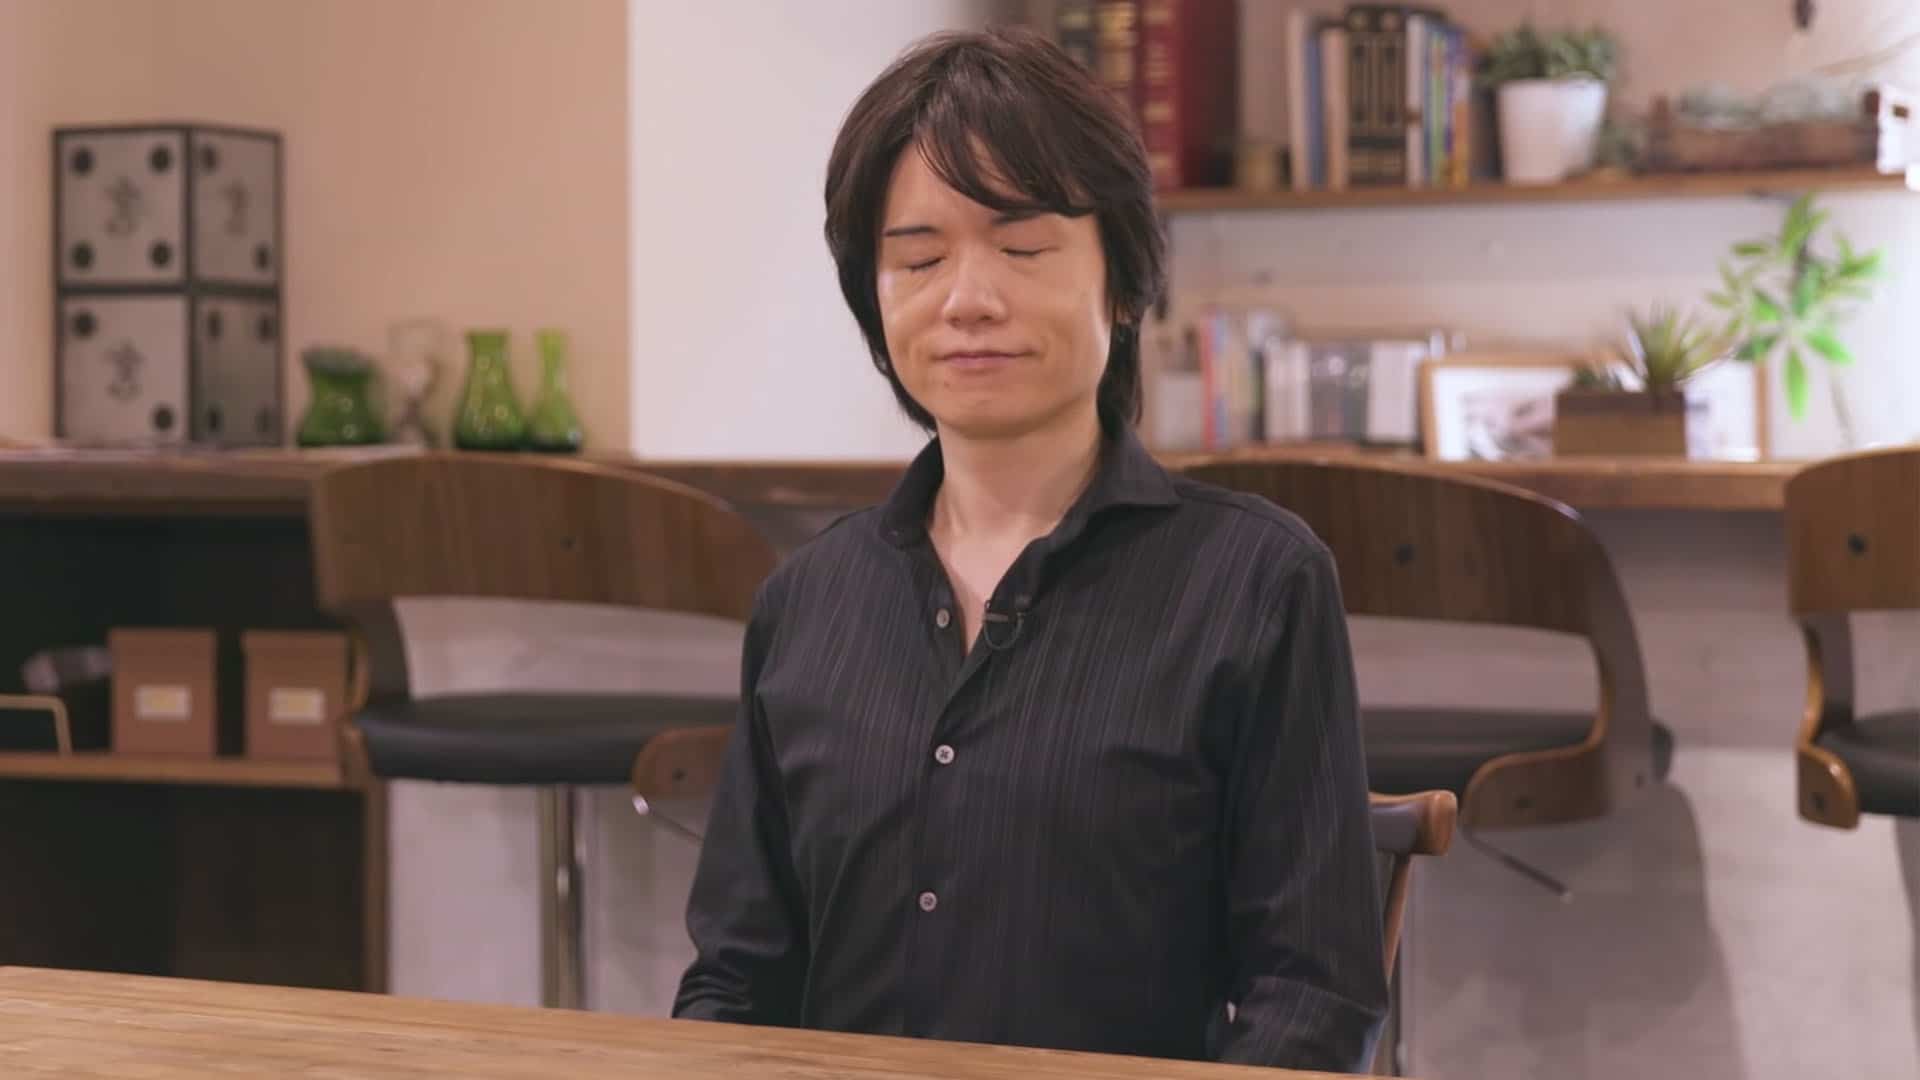 Sakurai habla sobre si dejaría el desarrollo de Smash Bros a otro: “Actualmente, no creo que un juego de Smash pueda ser producido sin mí”